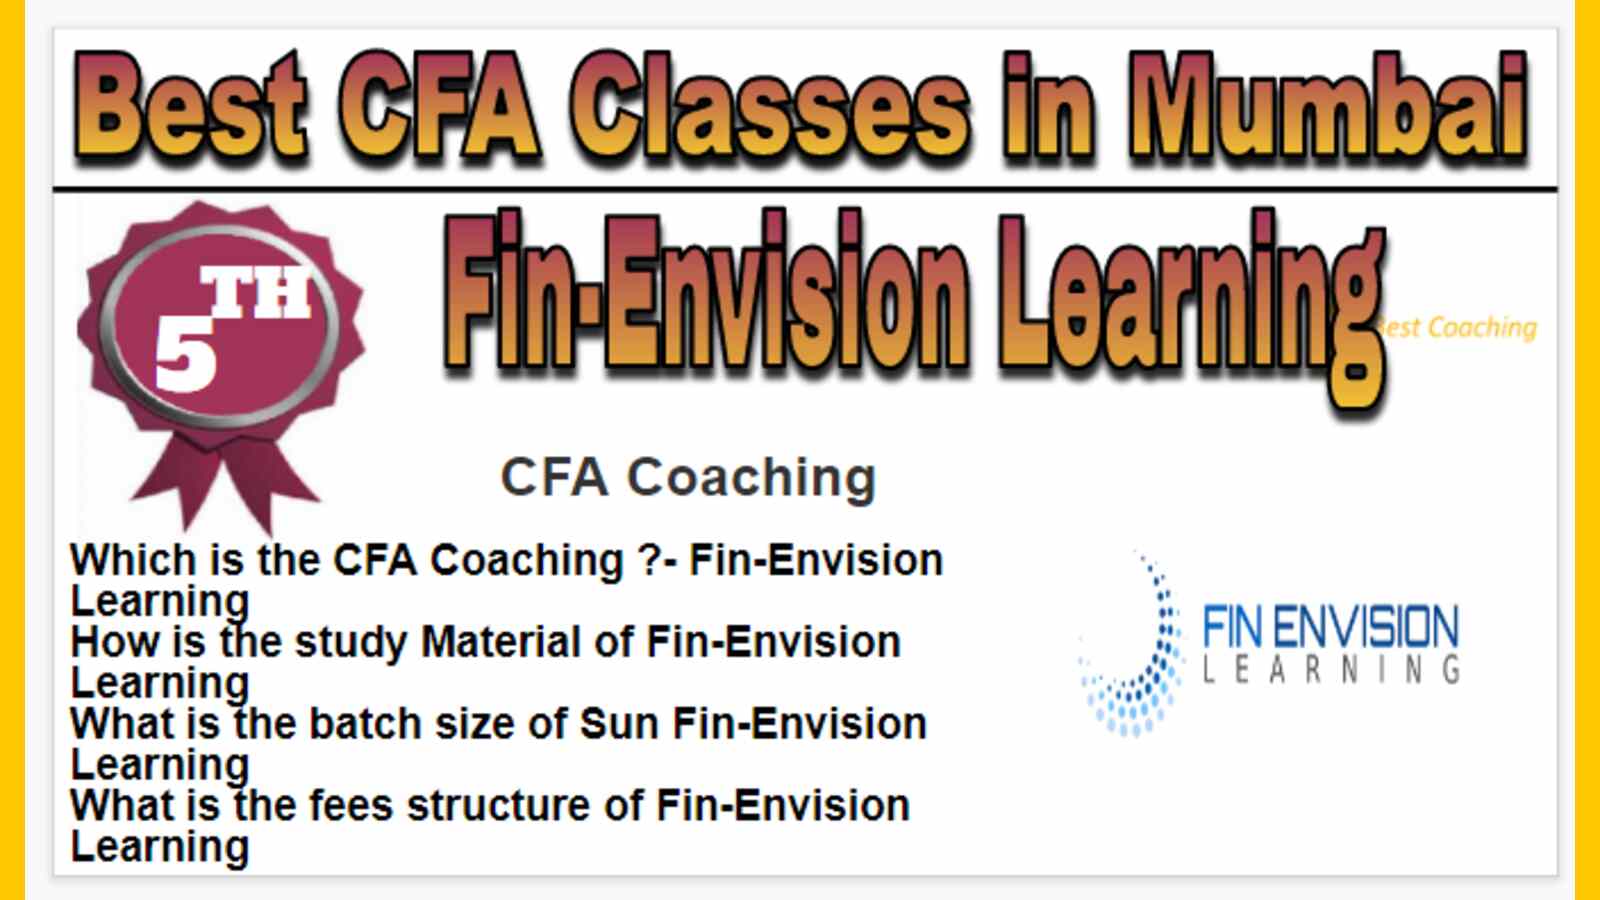 Rank 5 Best CFA Classes in Mumbai